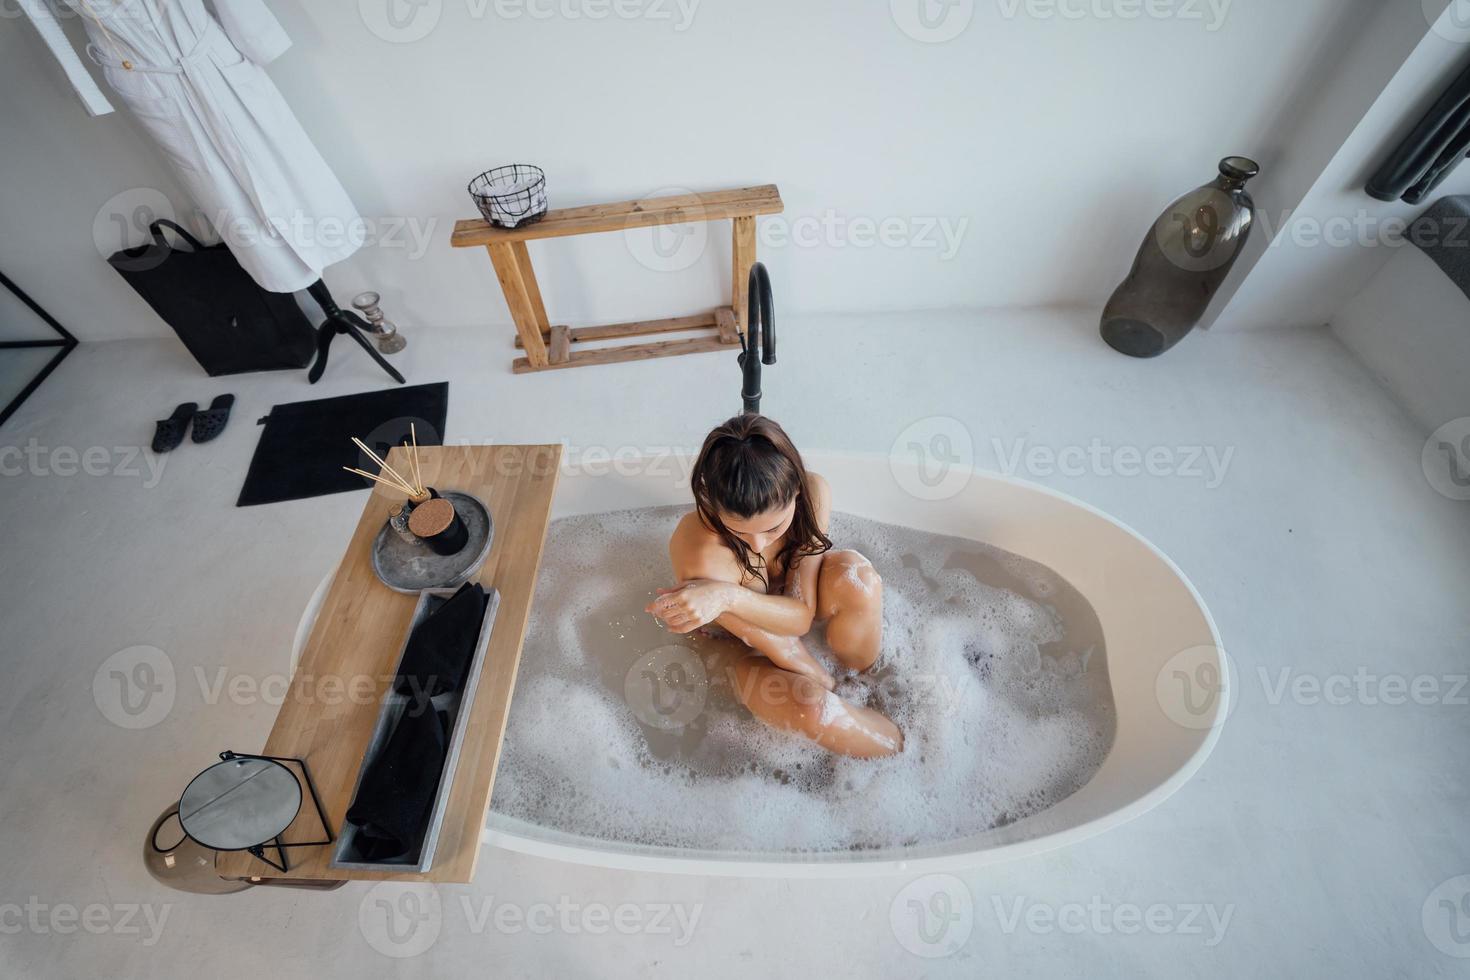 junge Frau umarmt ihre Beine, während sie in der Badewanne sitzt foto